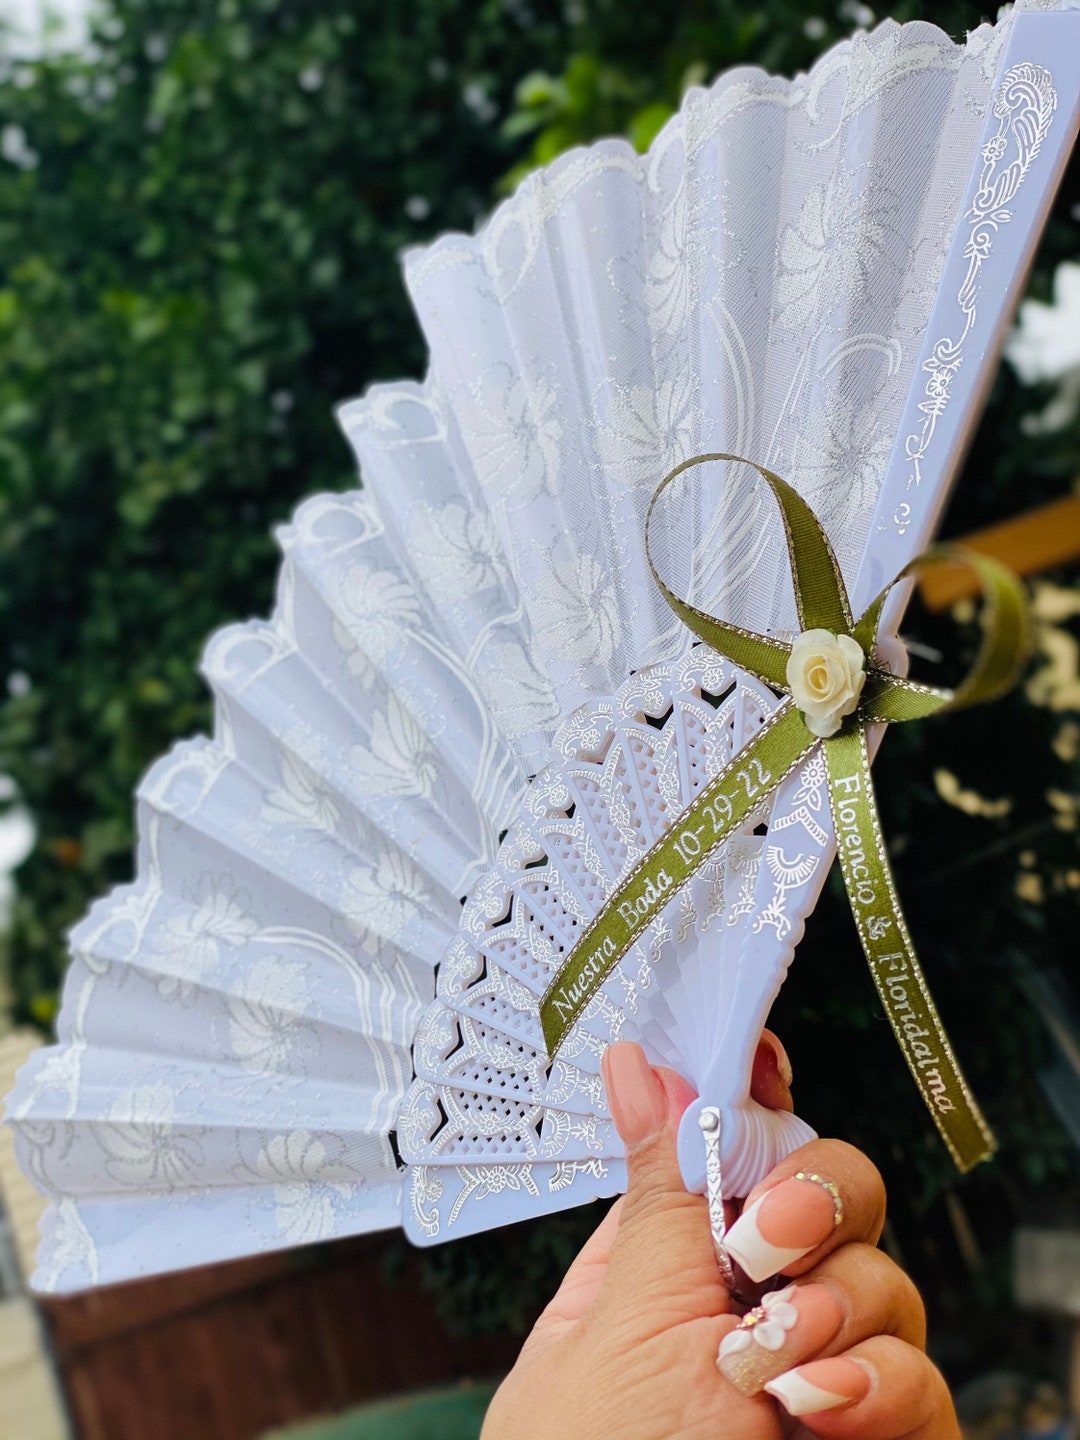 120 abanicos personalizados para recuerdos de boda a granel, abanicos de  mano personalizados para invitados, novias/damas de honor, abanicos  plegables